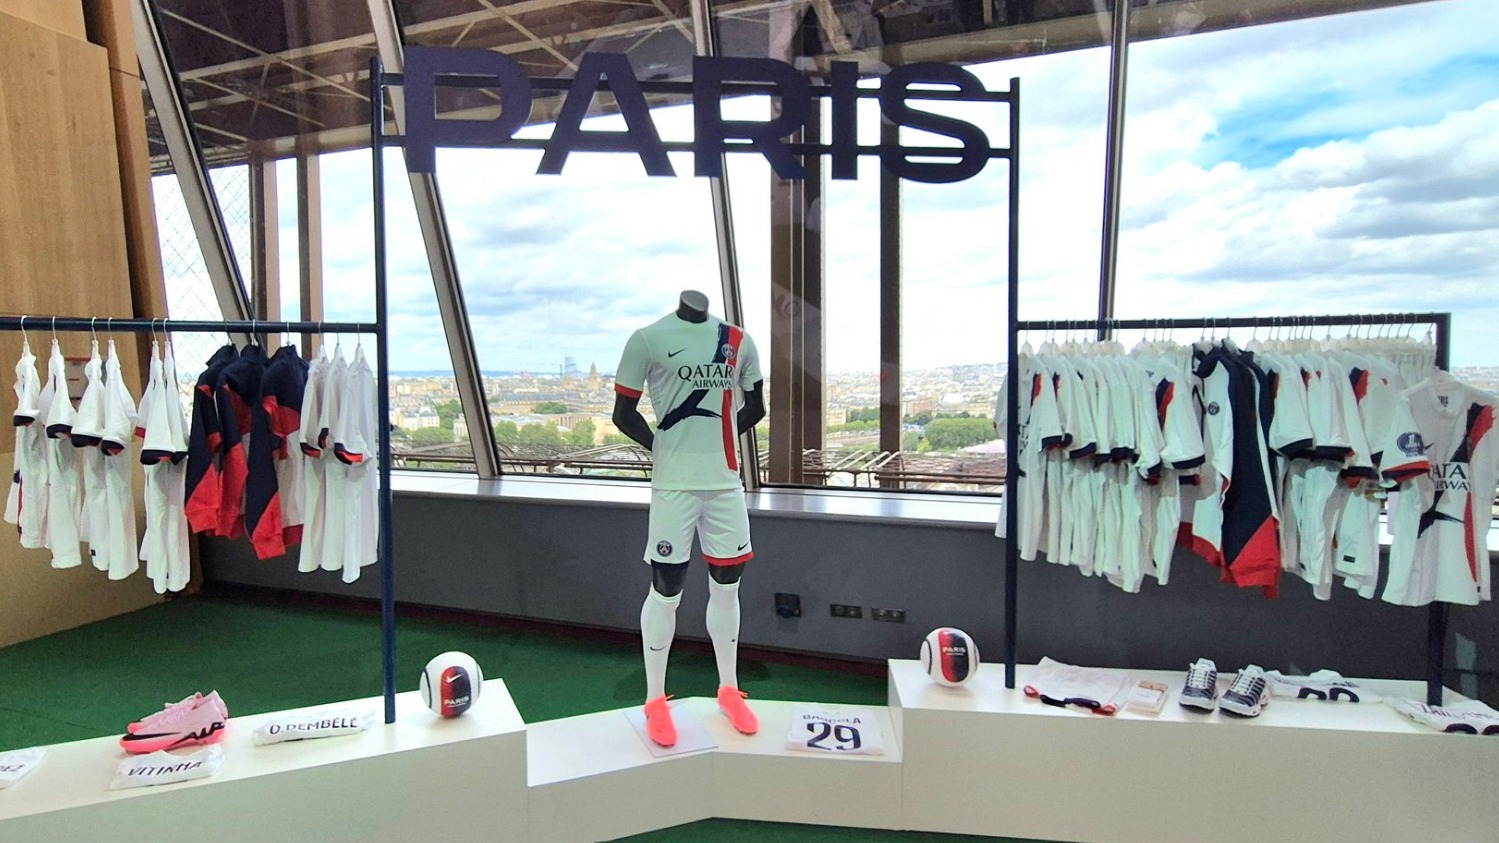 Foot : le PSG ouvre un pop-up store exceptionnel au 1er étage de la Tour Eiffel pour présenter son nouveau maillot